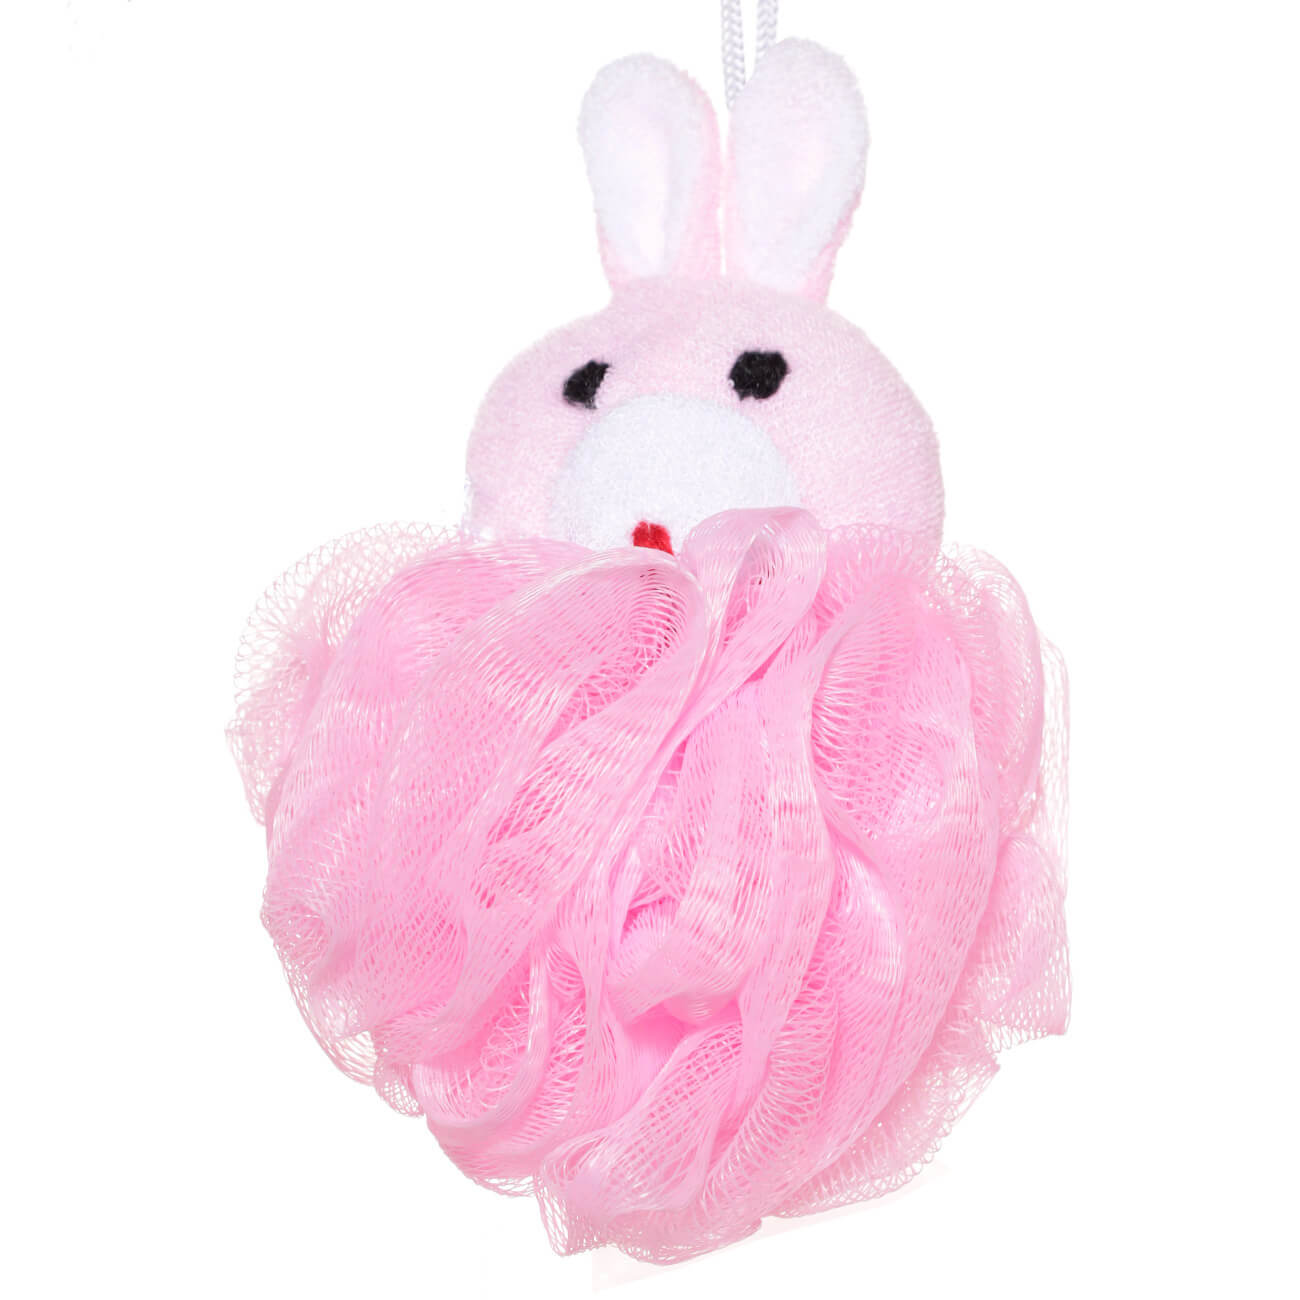 Мочалка для мытья тела, 12 см, детская, полиэтилен/полиэстер, розовая, Заяц, Rabbit изображение № 1